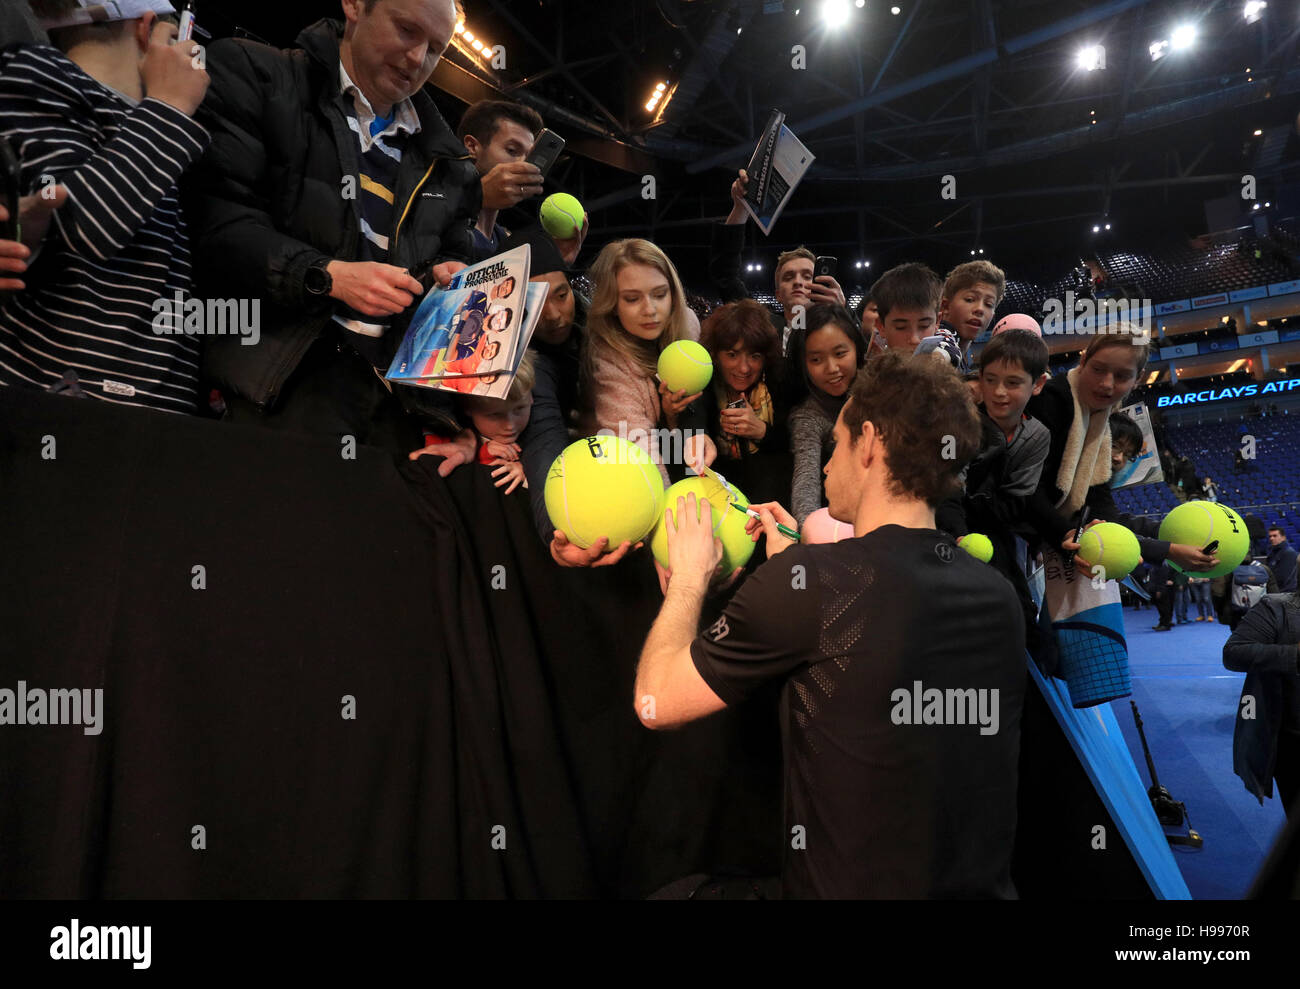 Andy Murray signe des autographes après la victoire sur Milos Raonic pendant le septième jour des finales du Barclays ATP World Tour à l'O2, Londres. APPUYEZ SUR ASSOCIATION photo. Date de la photo: Samedi 19 novembre 2016. Voir PA Story TENNIS Londres. Le crédit photo devrait se lire comme suit : Adam Davy/PA Wire. Banque D'Images